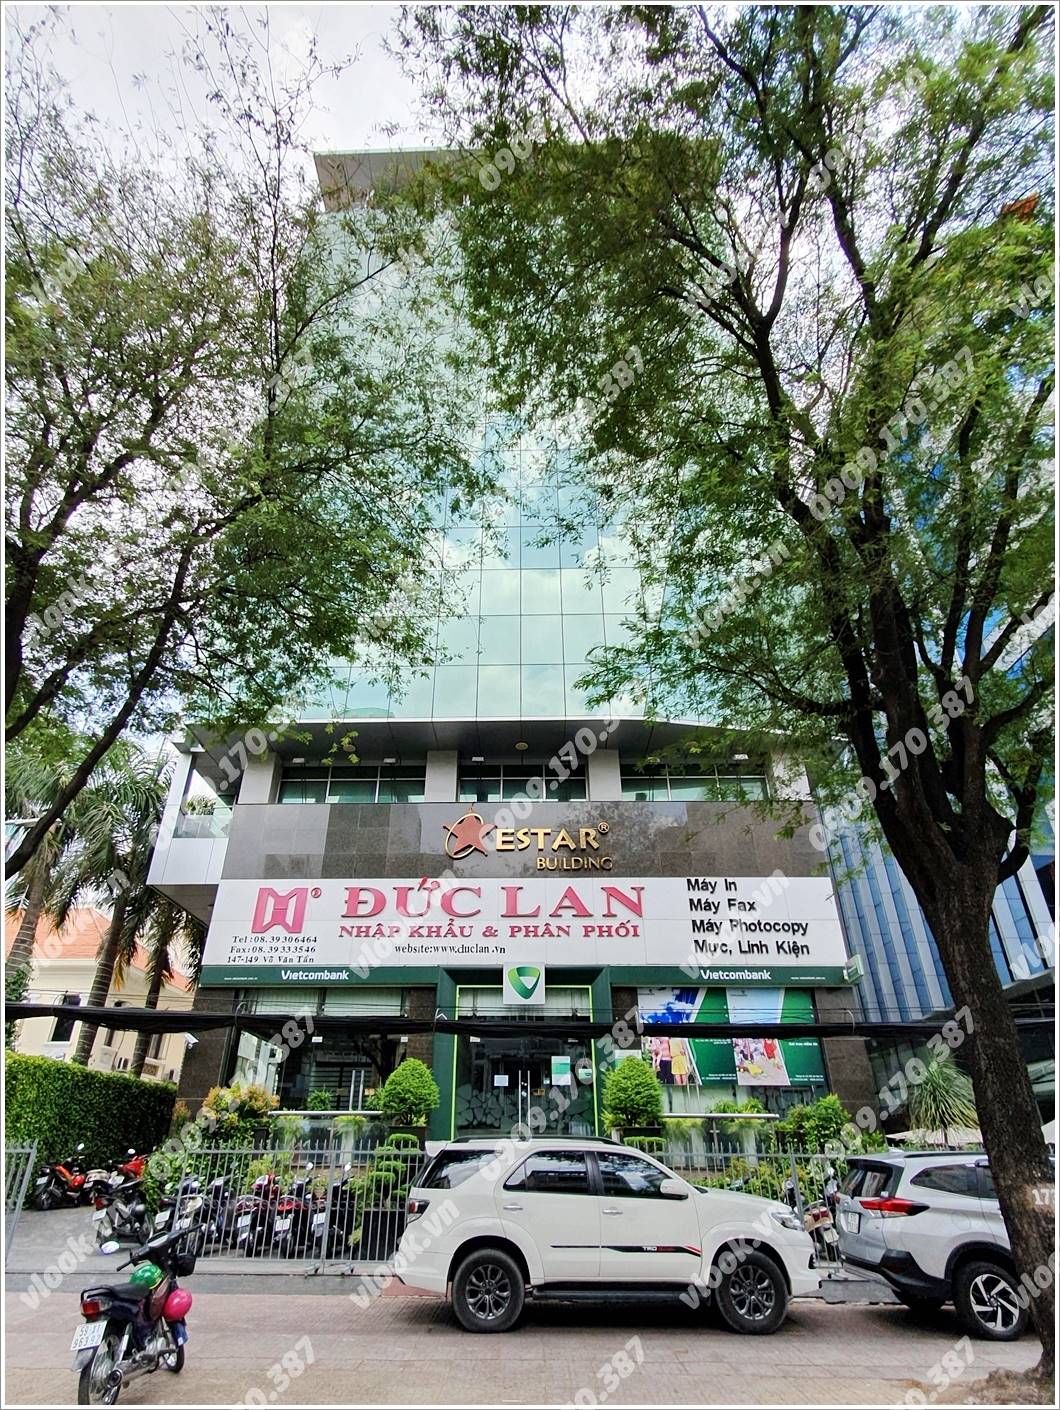 Mặt trước cao ốc cho thuê văn phòng Estar Building, Võ Văn Tần, Quận 3, TPHCM - vlook.vn